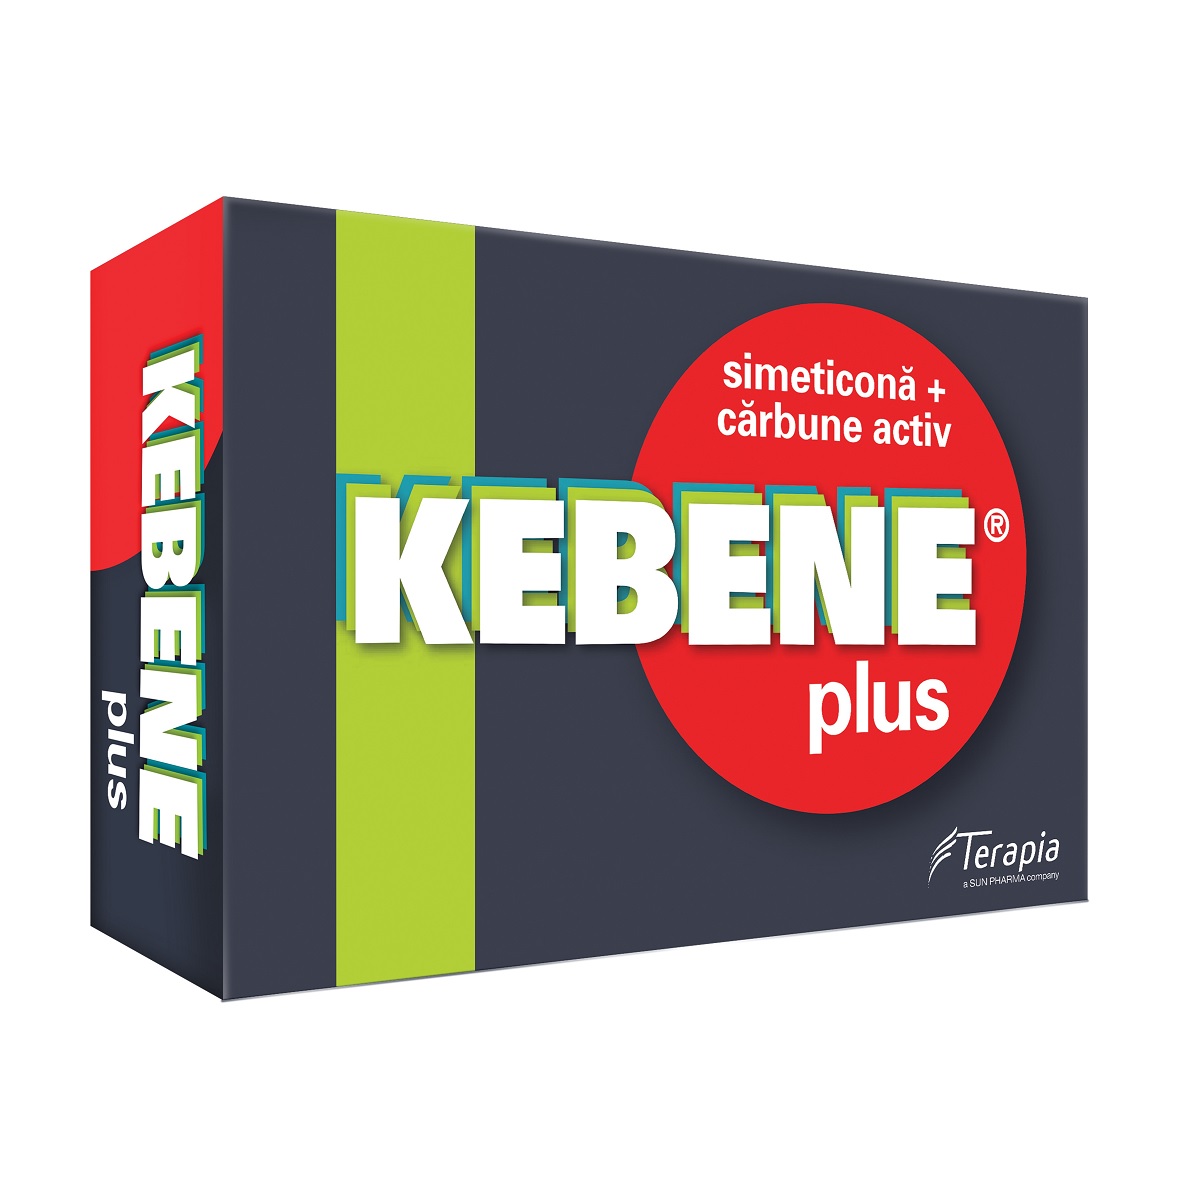 Afecțiuni digestive - Kebene Plus, 20 comprimate, Terapia, epastila.ro